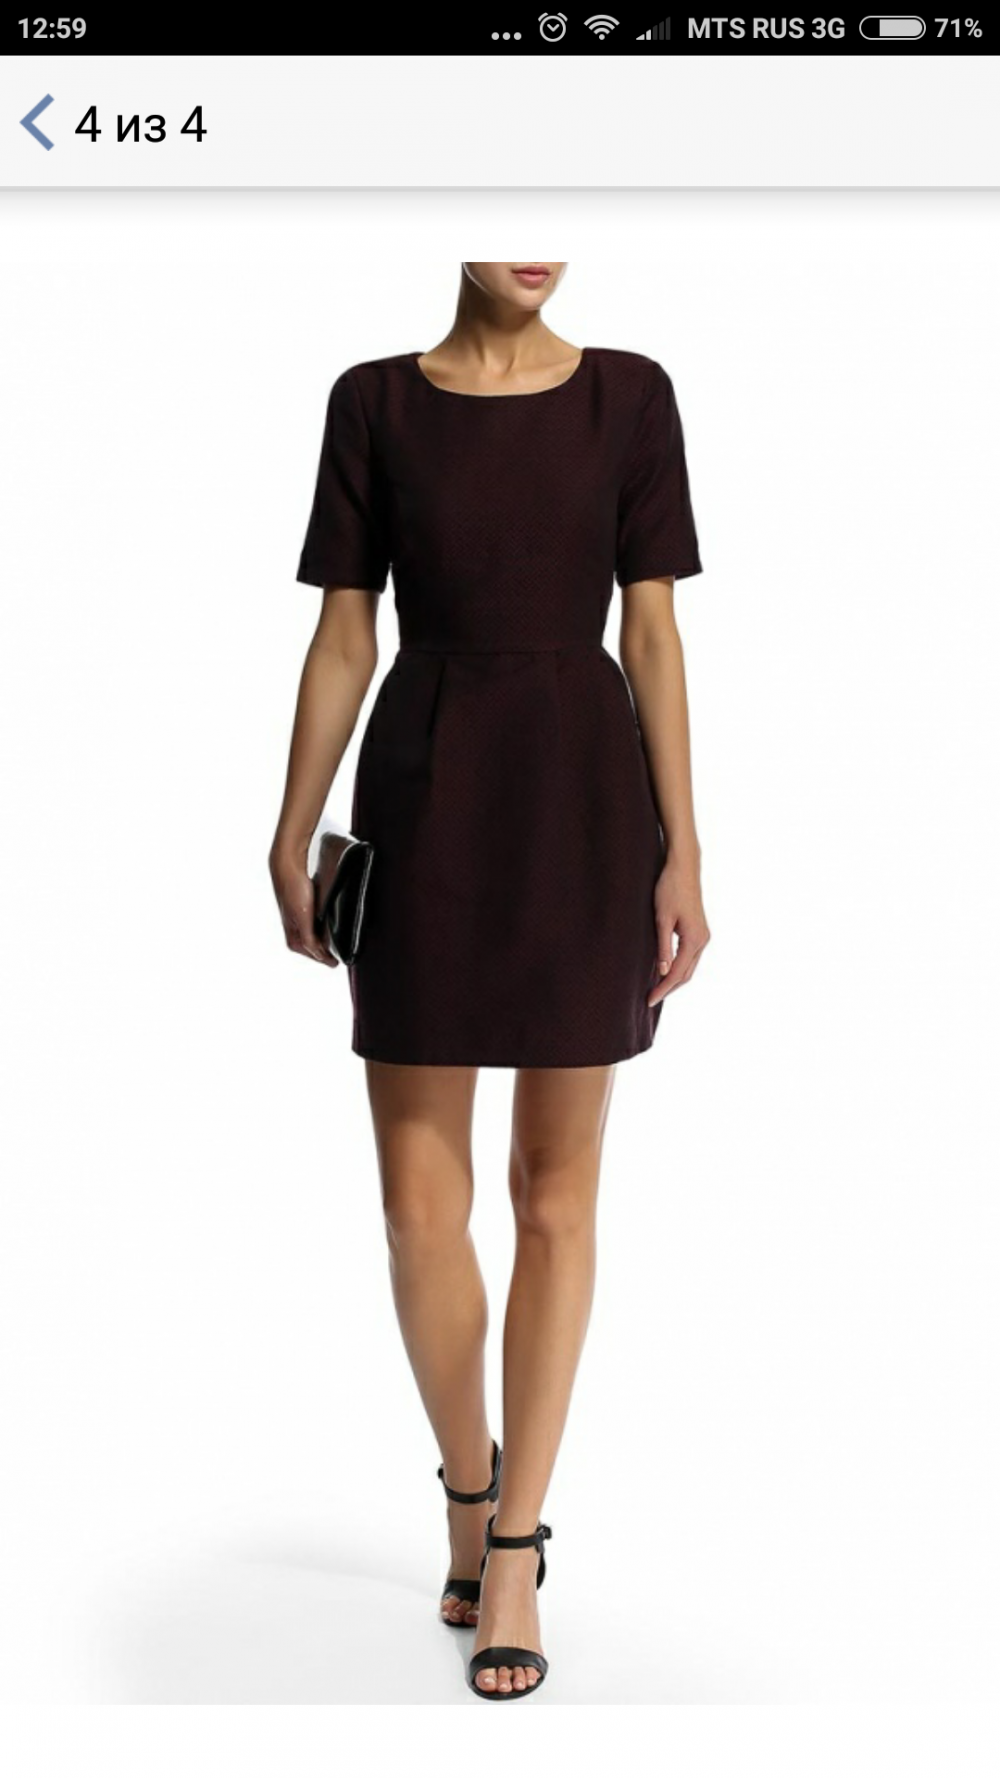 Качественное платье темно-бордового цвета от Tom Farr в размере XS. Недорого.